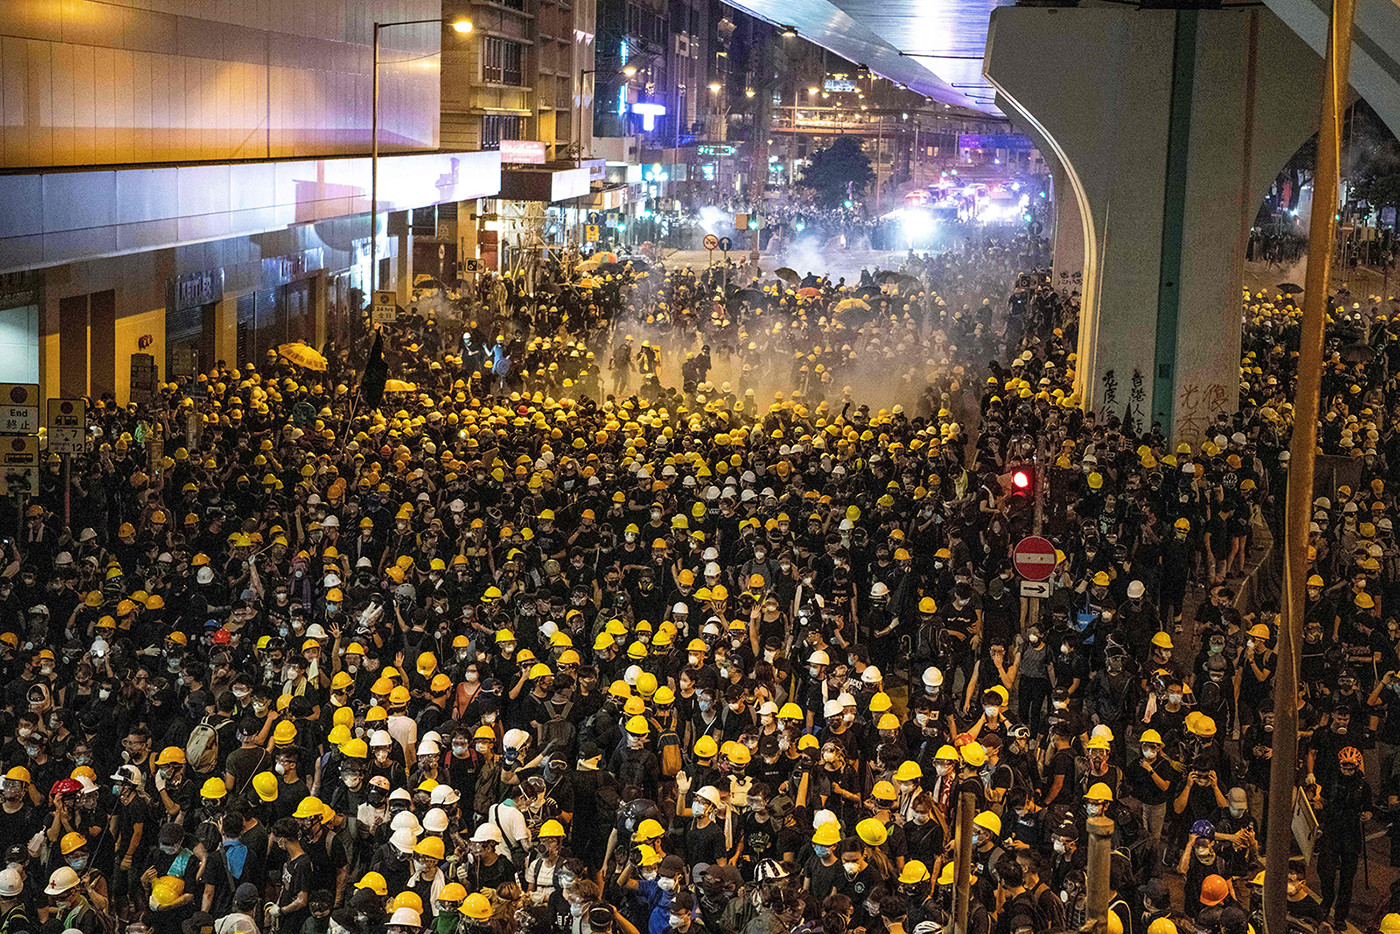   Cảnh sát bắn hơi cay vào người biểu tình để giải tán họ sau cuộc tuần hành chống lại dự luật dẫn độ gây tranh cãi ở Hồng Kông vào ngày 21 tháng 7.  